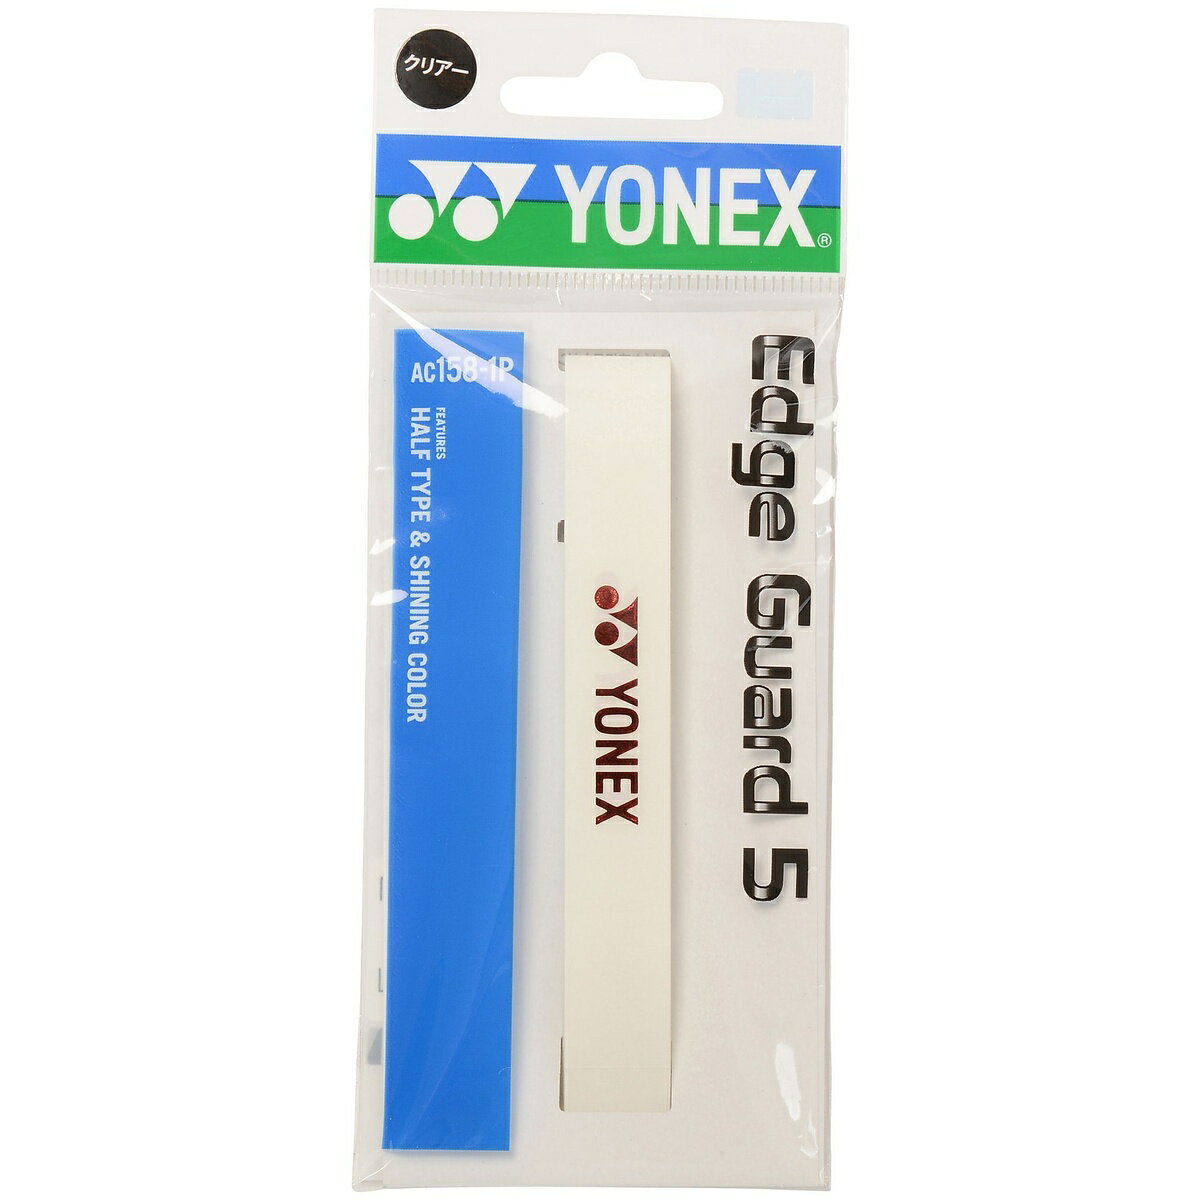 YONEX (ヨネックス) ラケットスポーツ グッズアクセサリー エッジガード5 シャインレッド AC158-1P